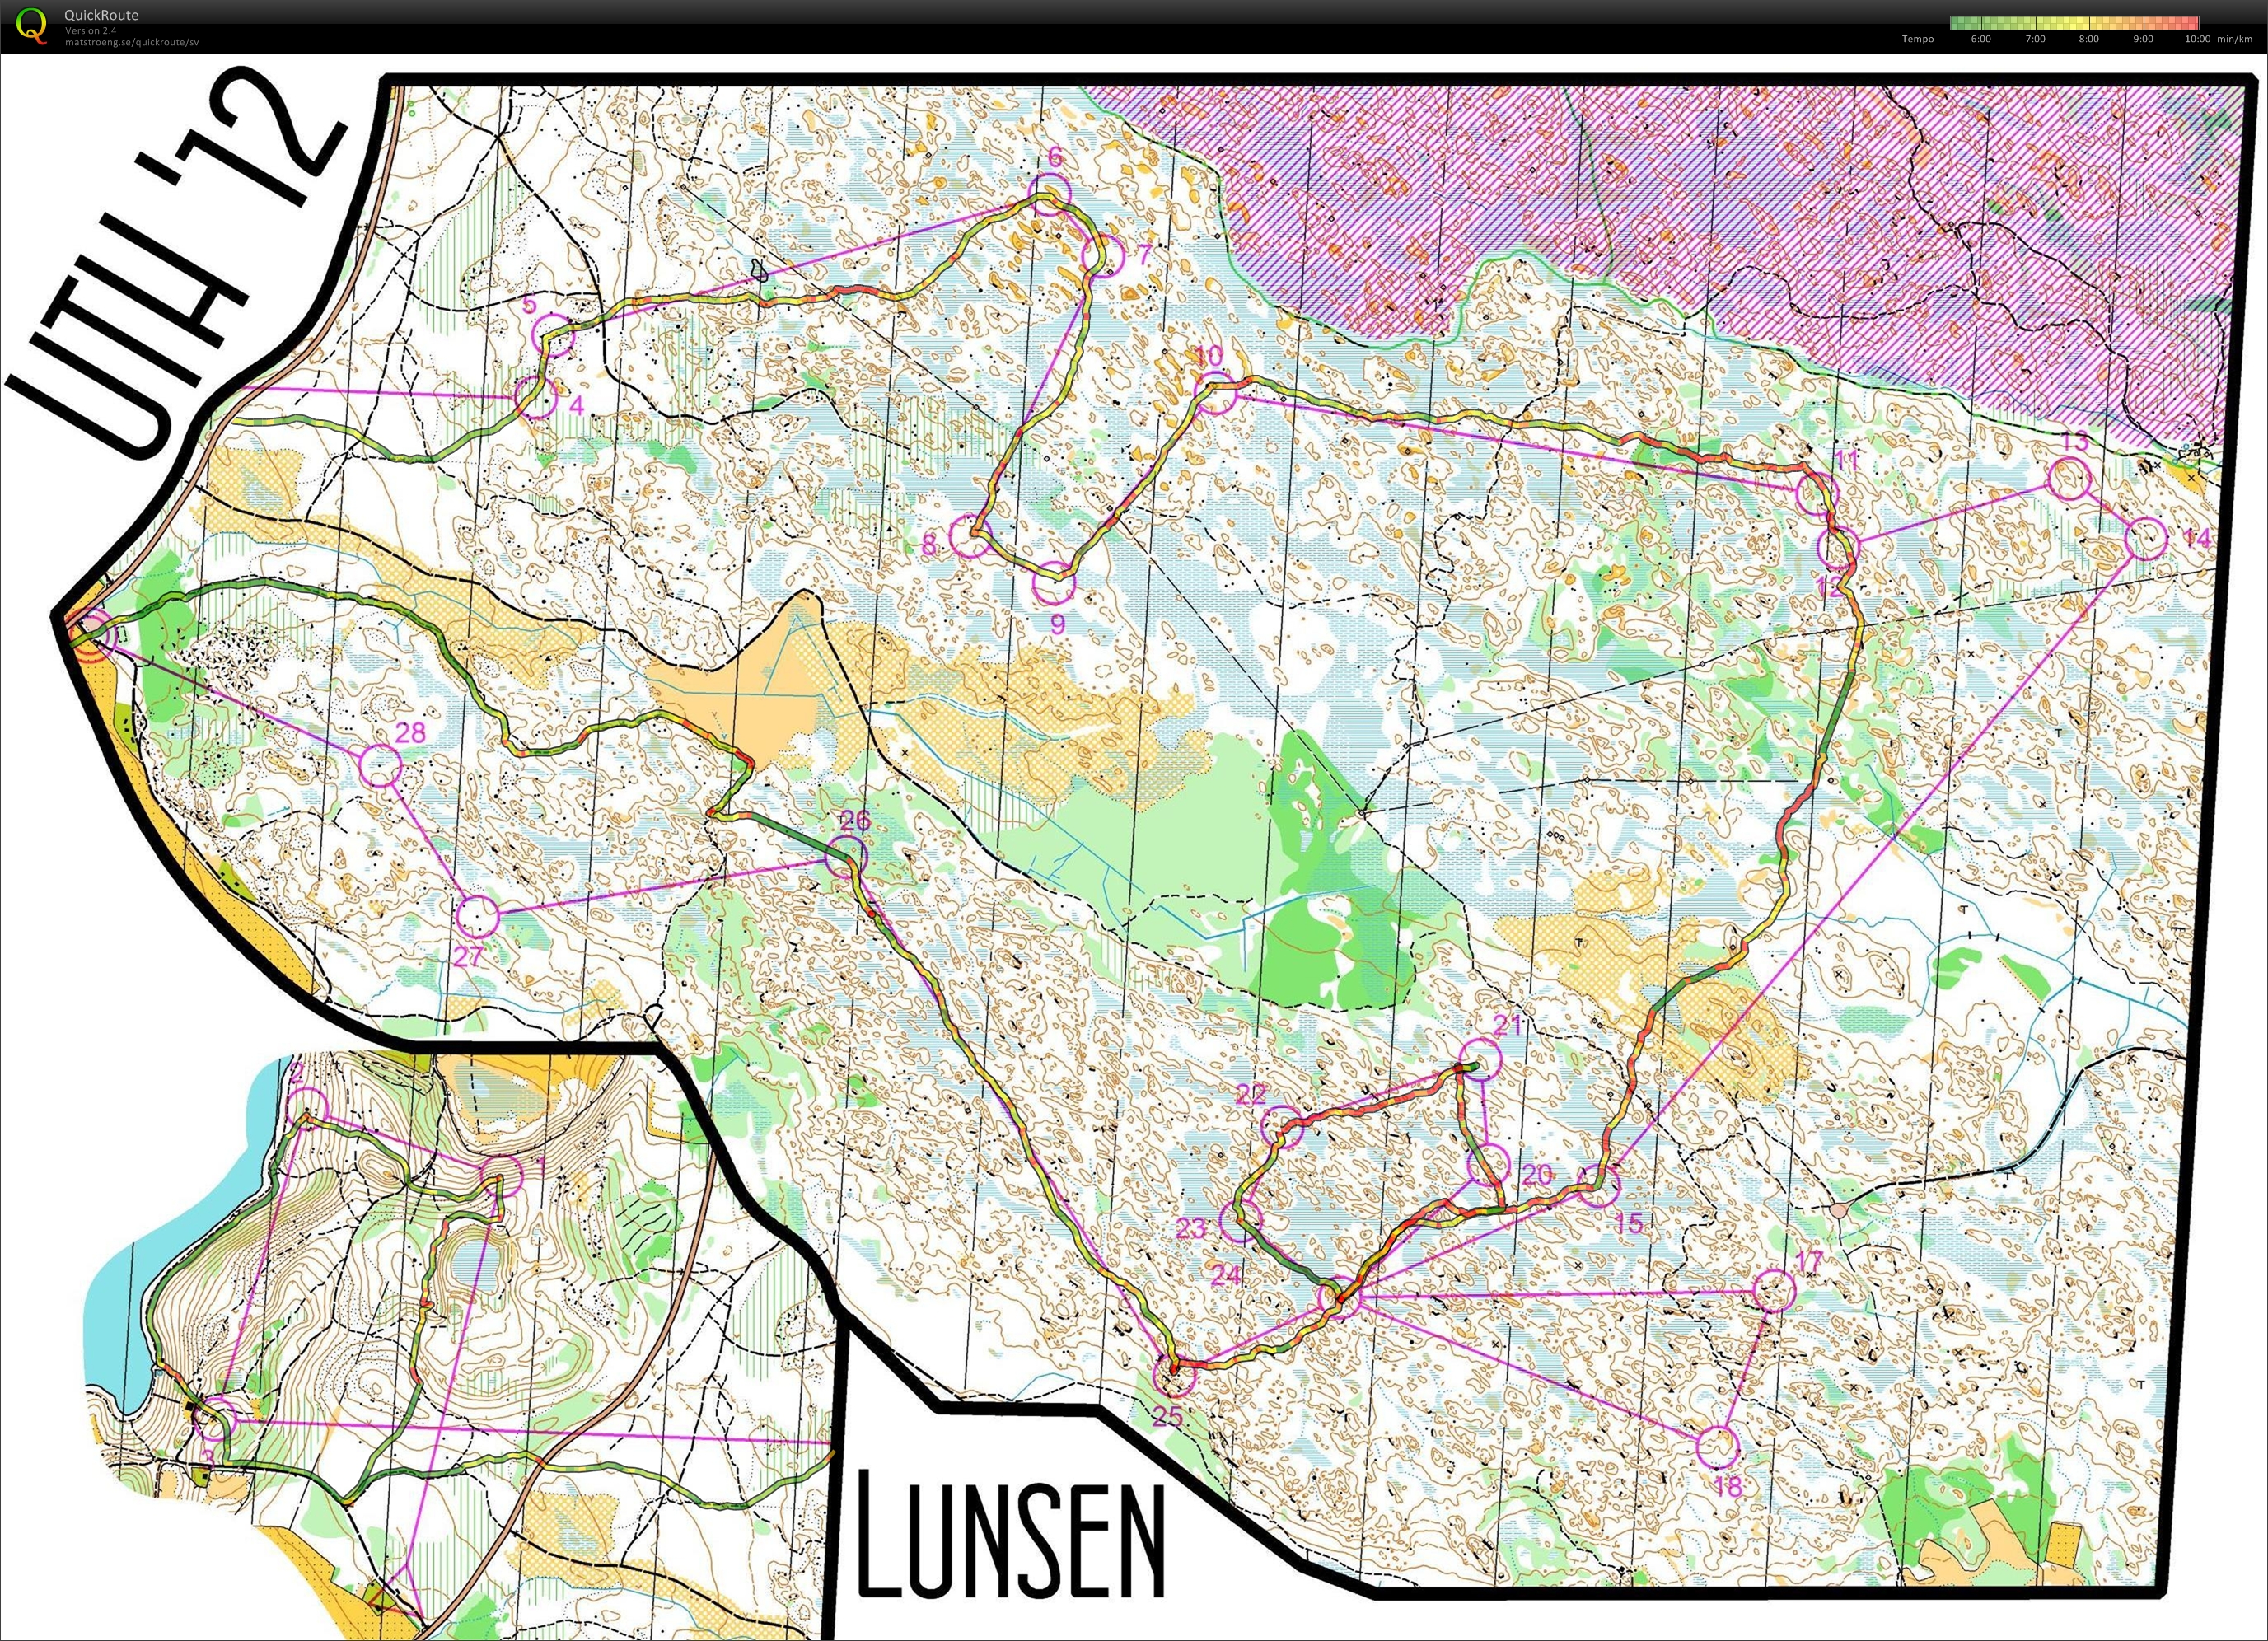 UTH, Lång (01.12.2012)